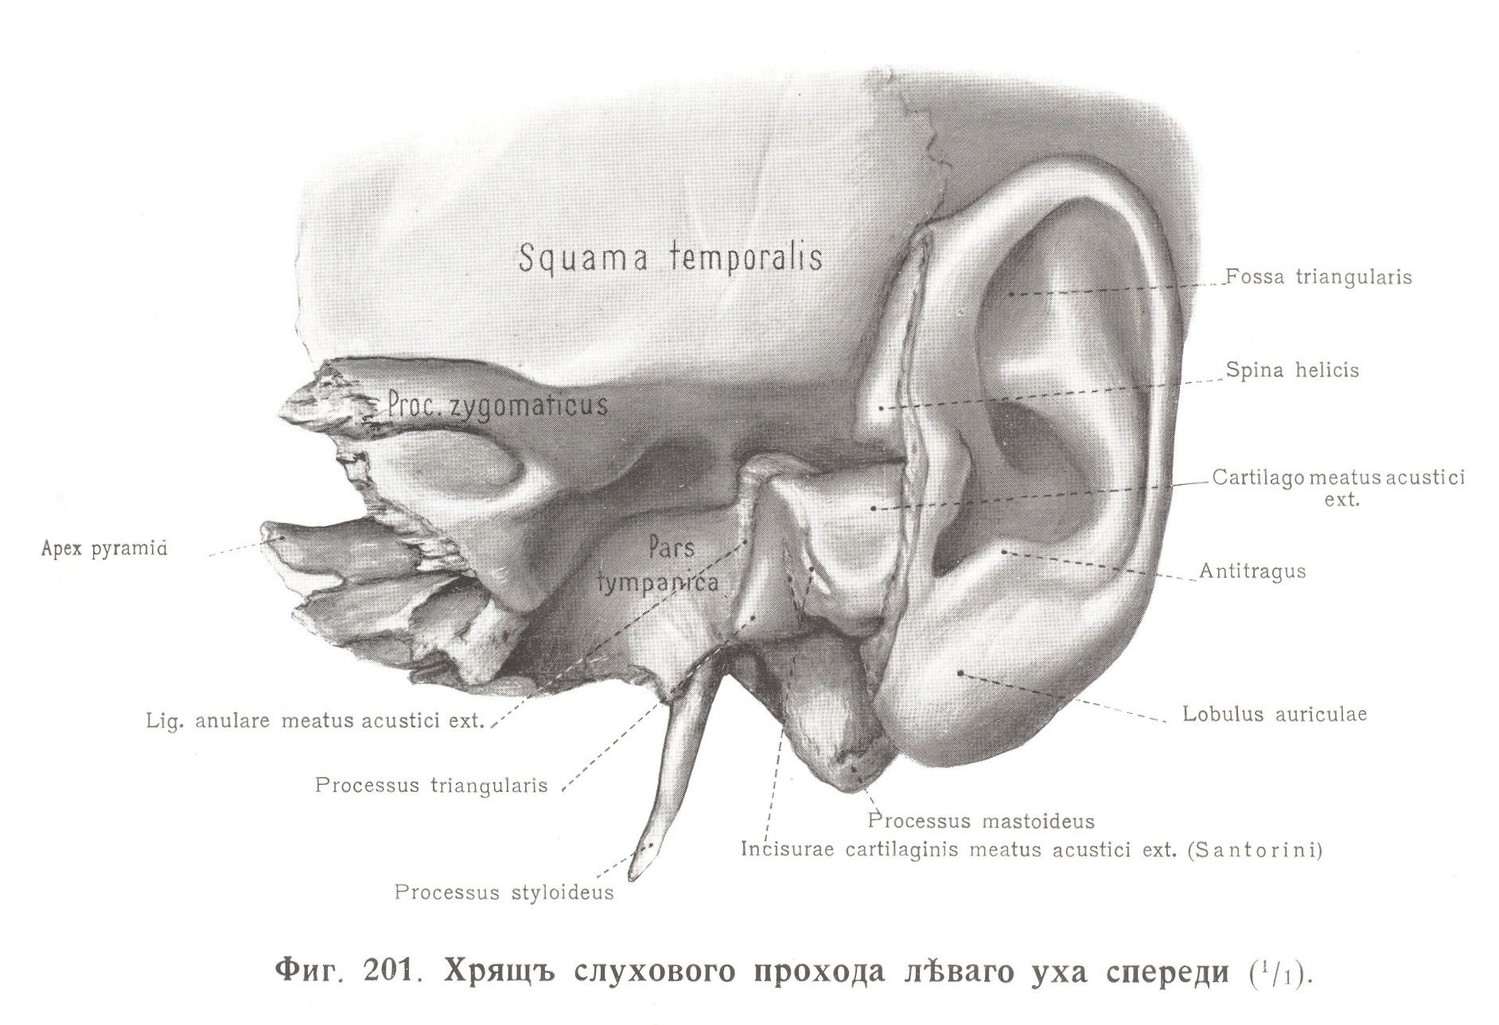 Хрящ слухового прохода левого уха спереди